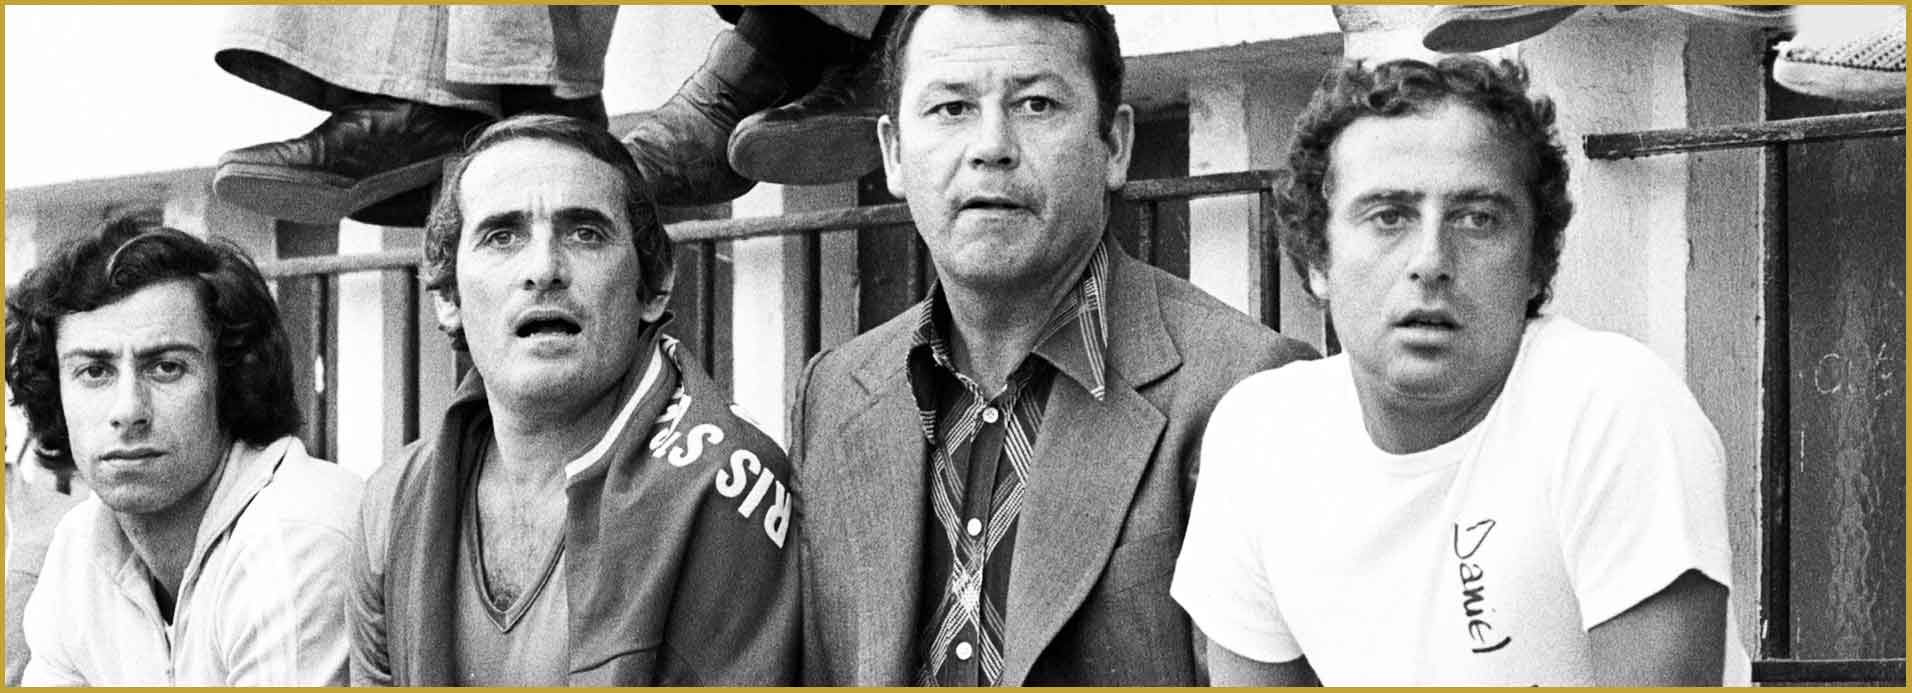 Patrick Levasseur (Kiné), Robert Vicot, Just Fontaine, Daniel Hechter - Saison 1973-74